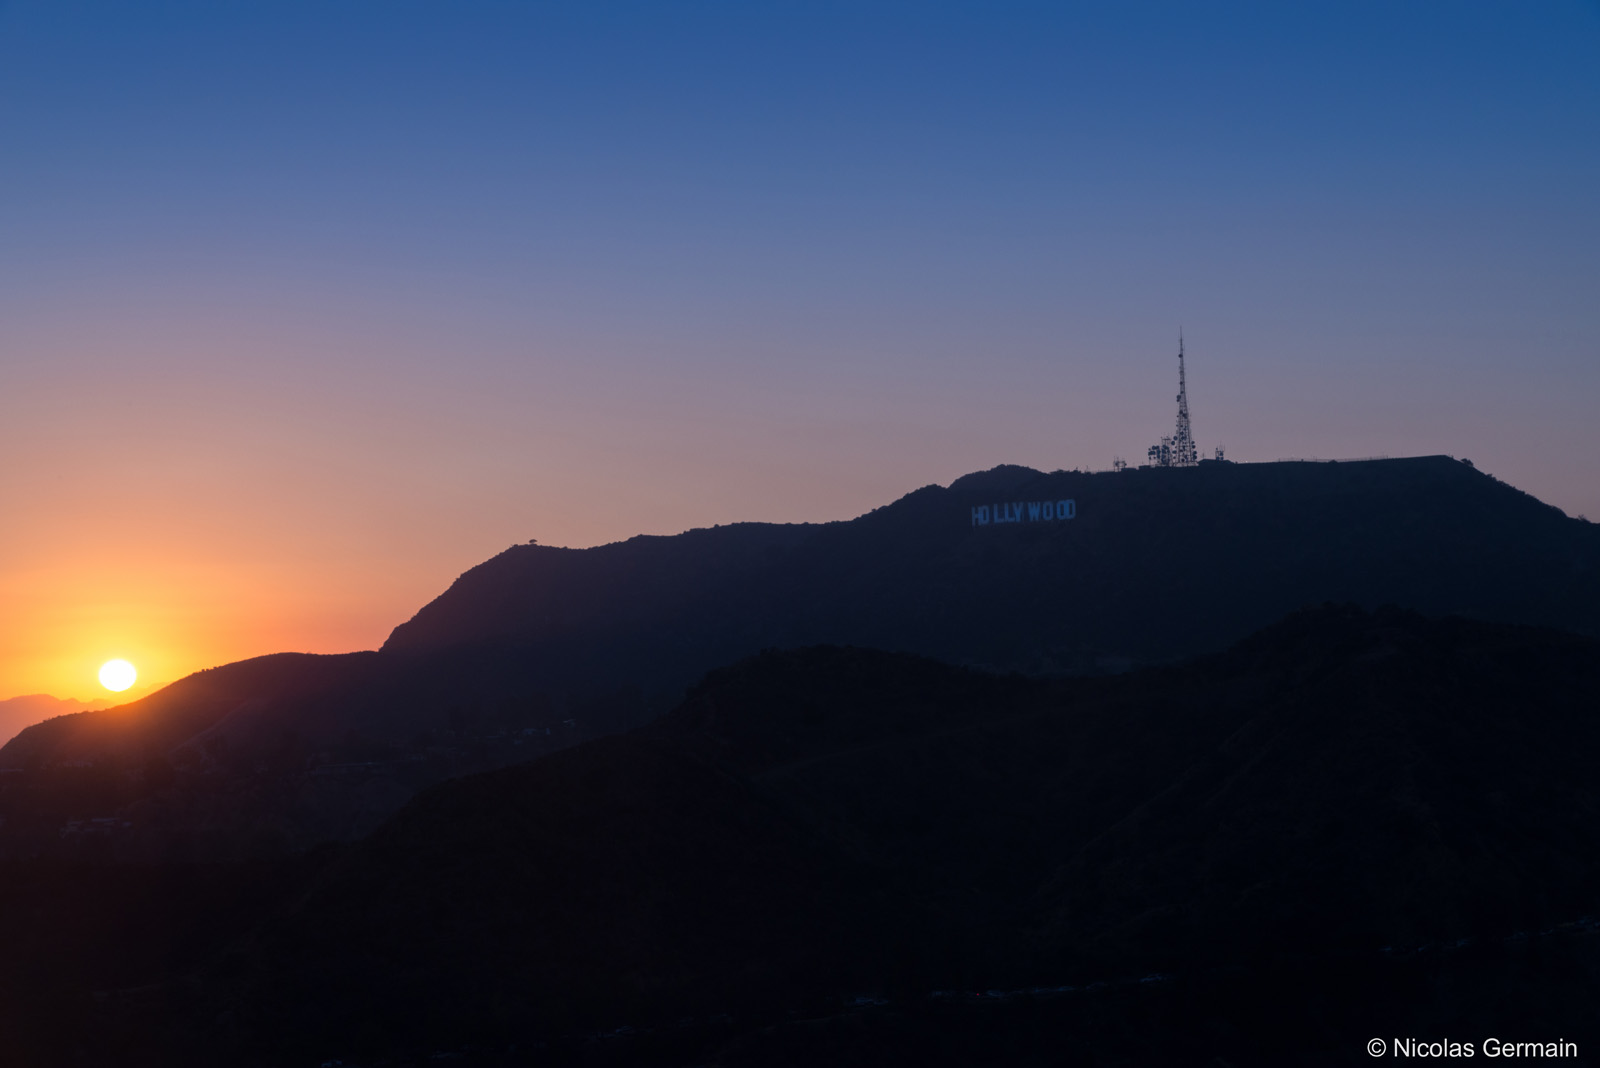 Les lettres Hollywood sur le Mont Lee au coucher du soleil, vues de Griffith Observatory, Los Angeles